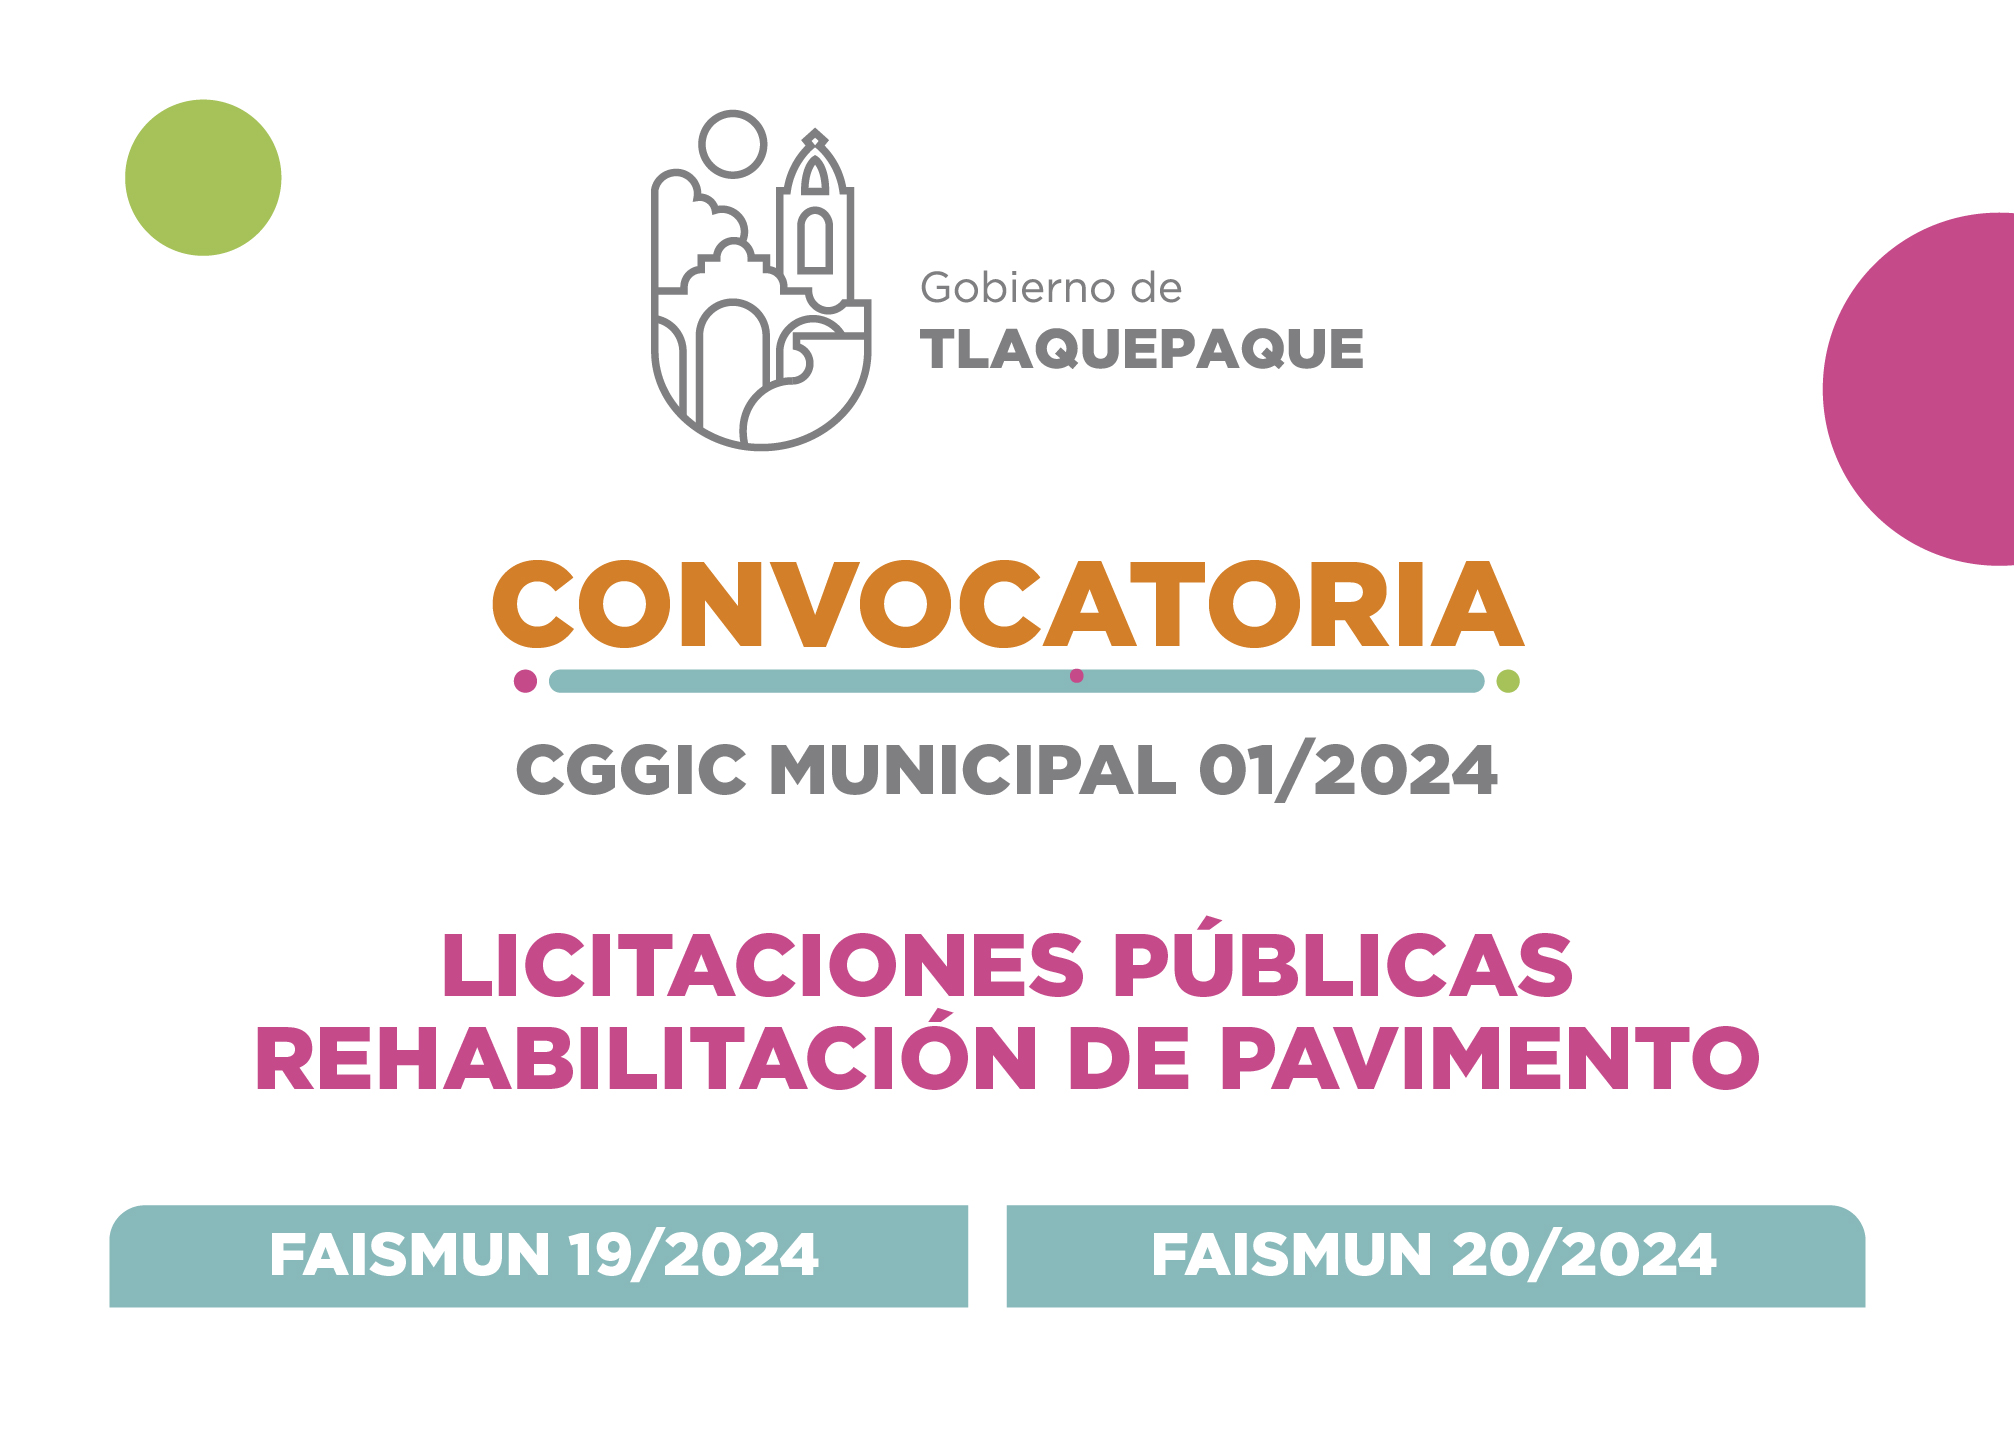 Convocatoria CGGIC MUNICIPAL 01/2024 